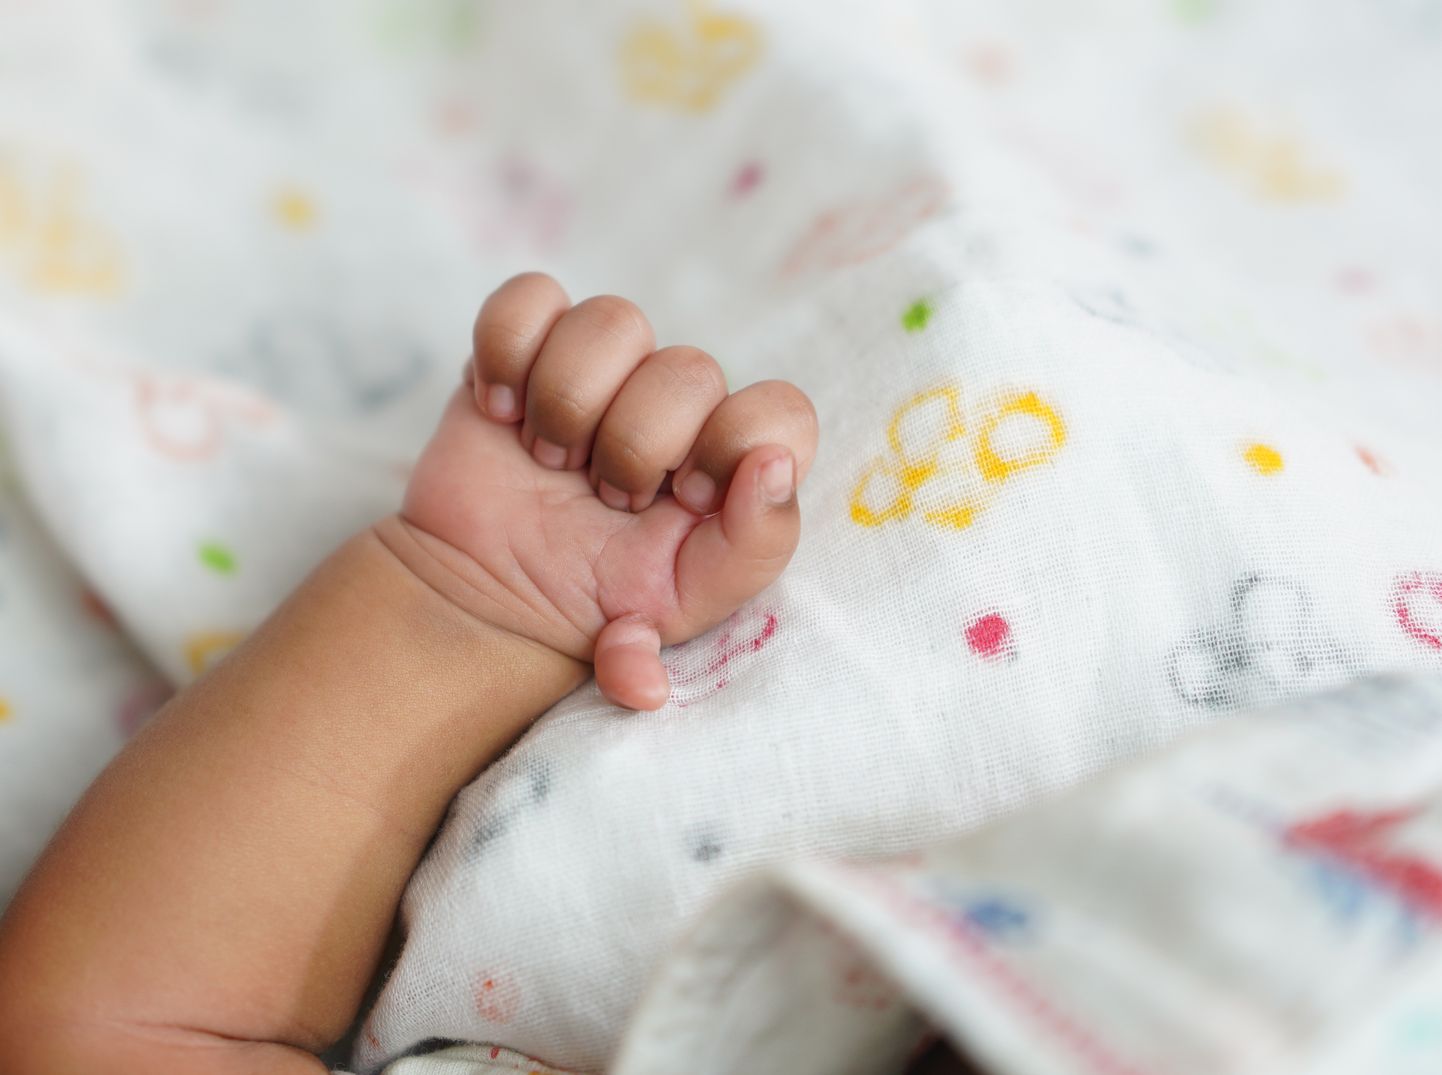 Polüdaktüülia on dominantse alleeli poolt põhjustatud geneetiline puue, mille tagajärjel inimese käel areneb rohkem kui viis sõrme.